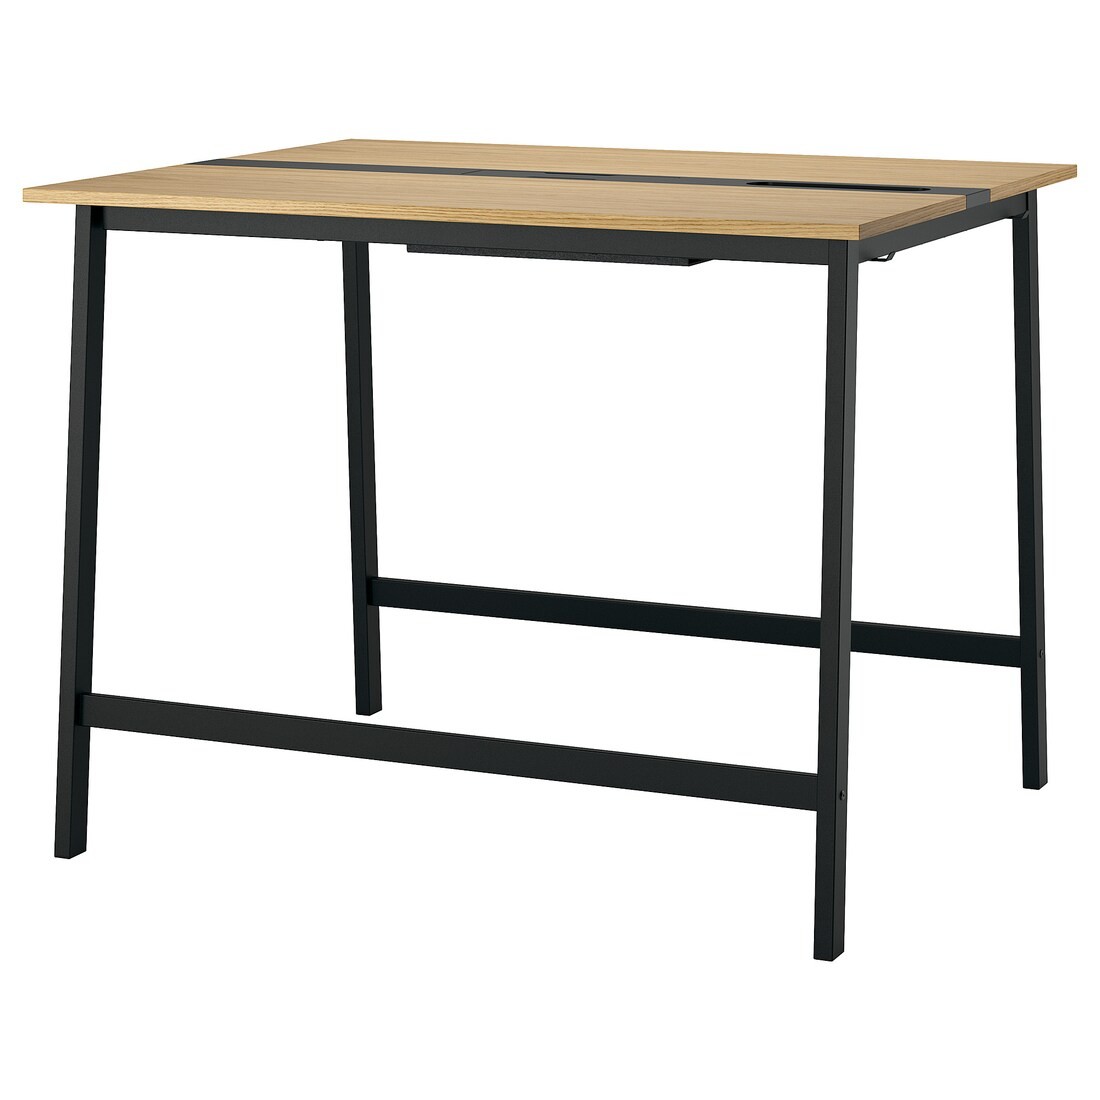 MITTZON конференц-стол, шпон дуба / черный, 140x108x105 см